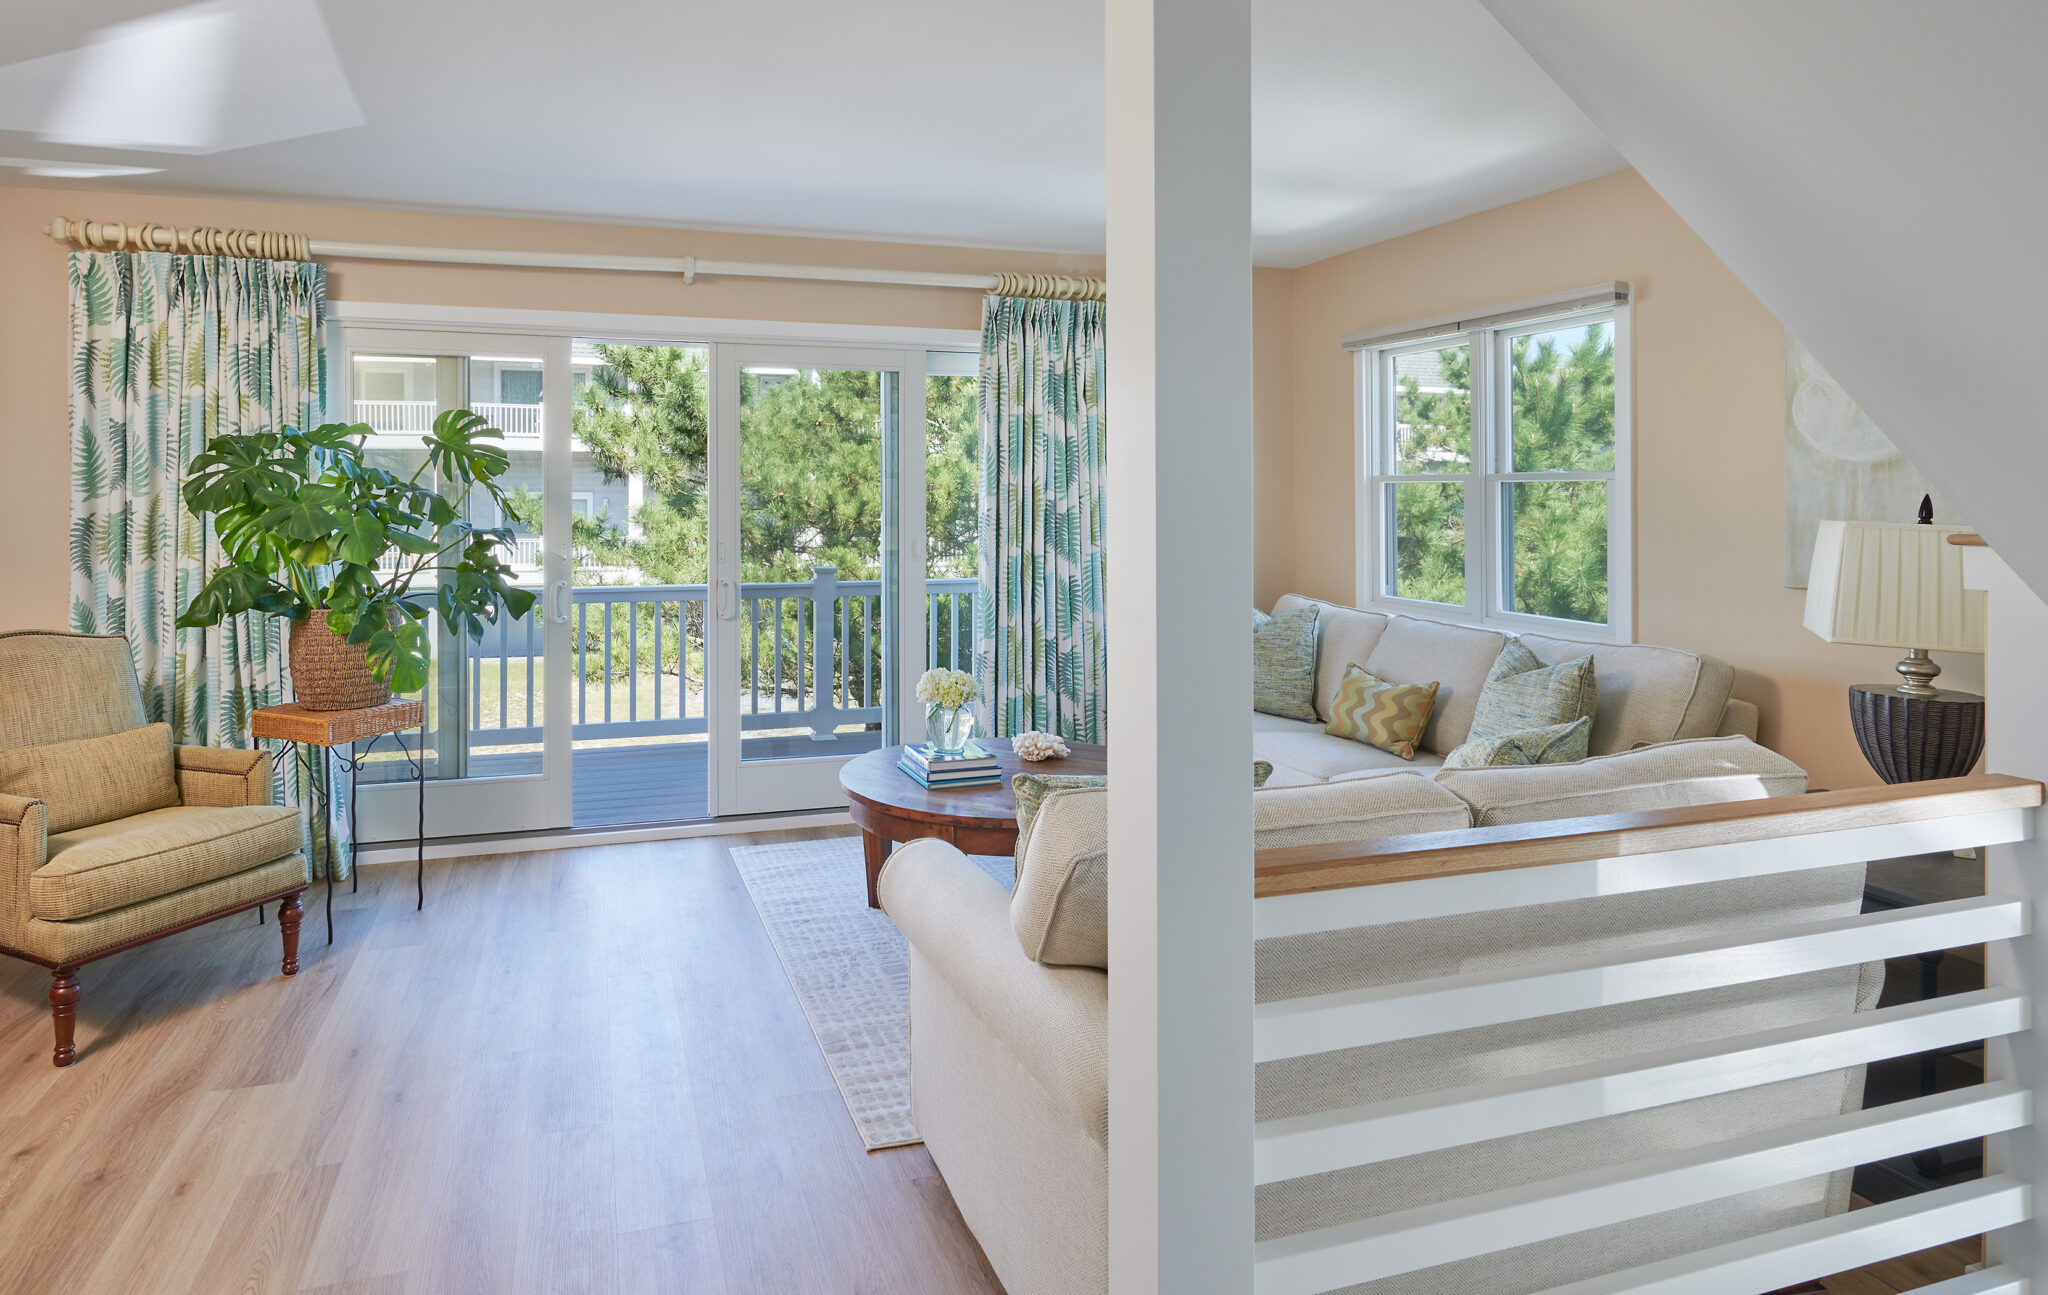 A bright and sunny family room with a coastal vibe